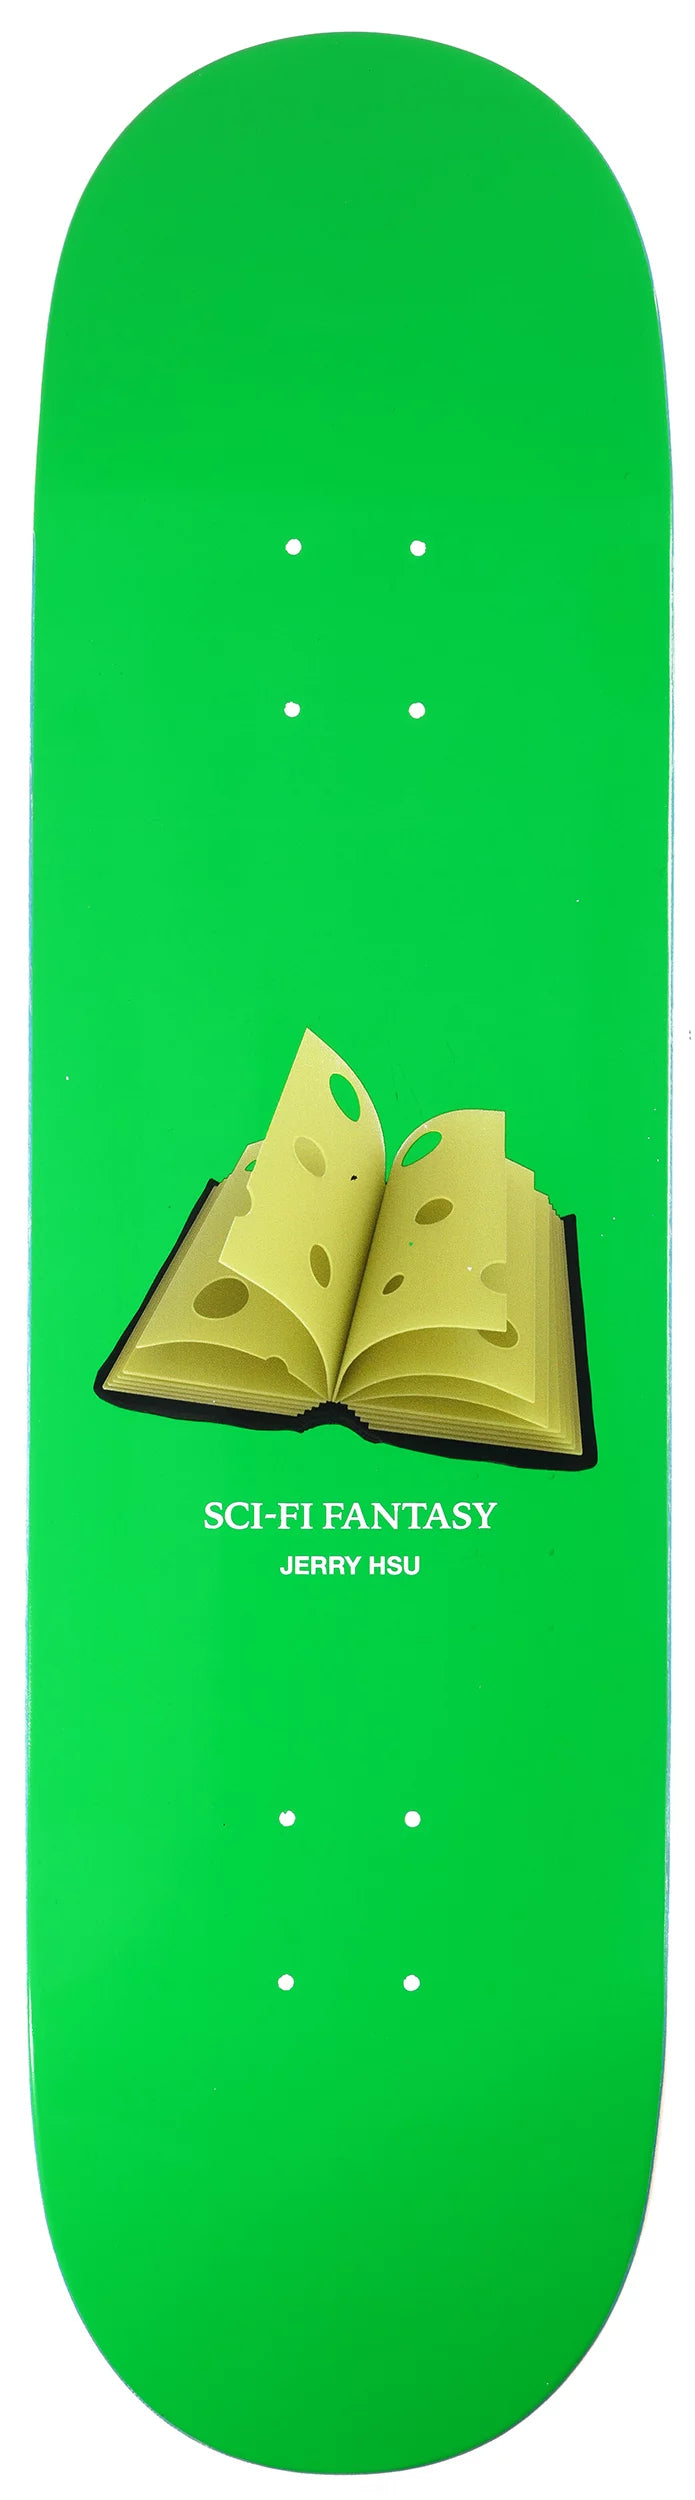 Sci-Fi Fantasy Jerry Hsu Swiss Book Deck 8.5